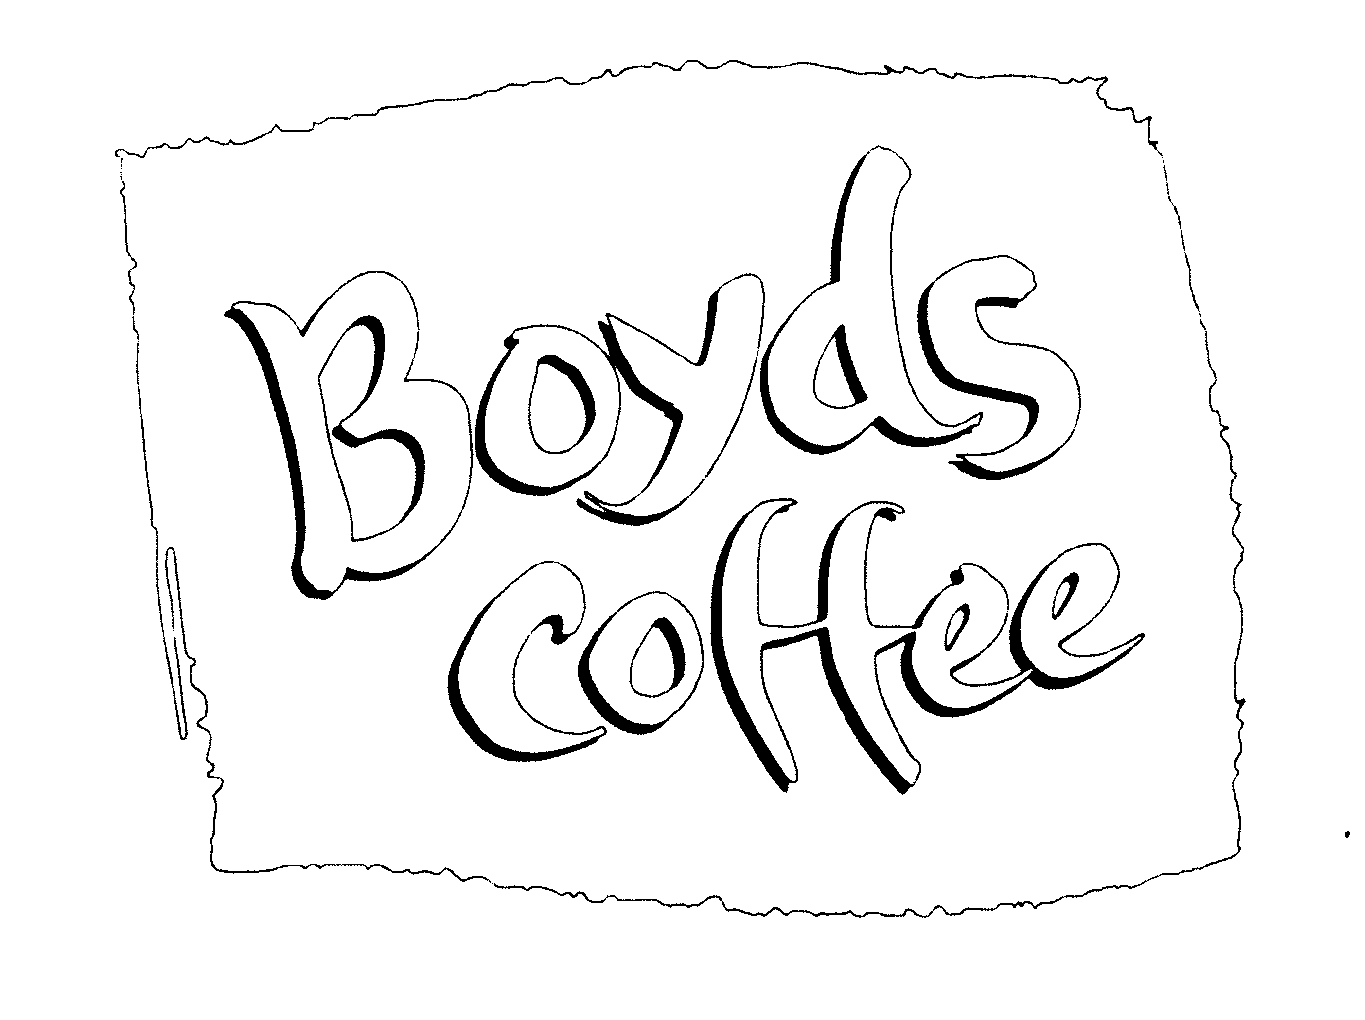  BOYDS COFFEE